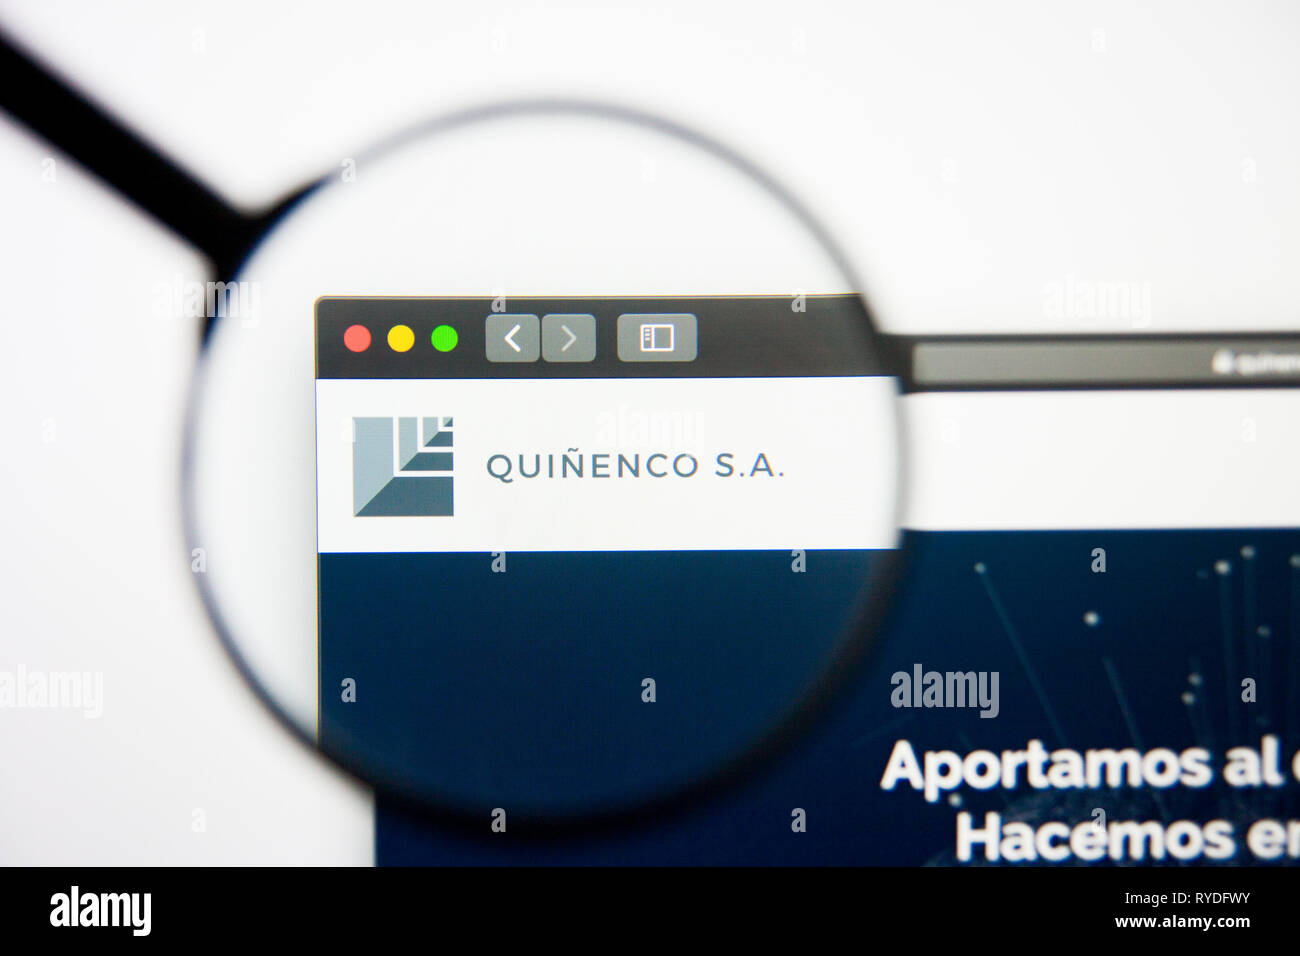 Los Angeles, California, Stati Uniti d'America - 5 Marzo 2019: Quinenco website homepage. Logo Quinenco visibile sulla schermata di visualizzazione illustrativa editoriale Foto Stock